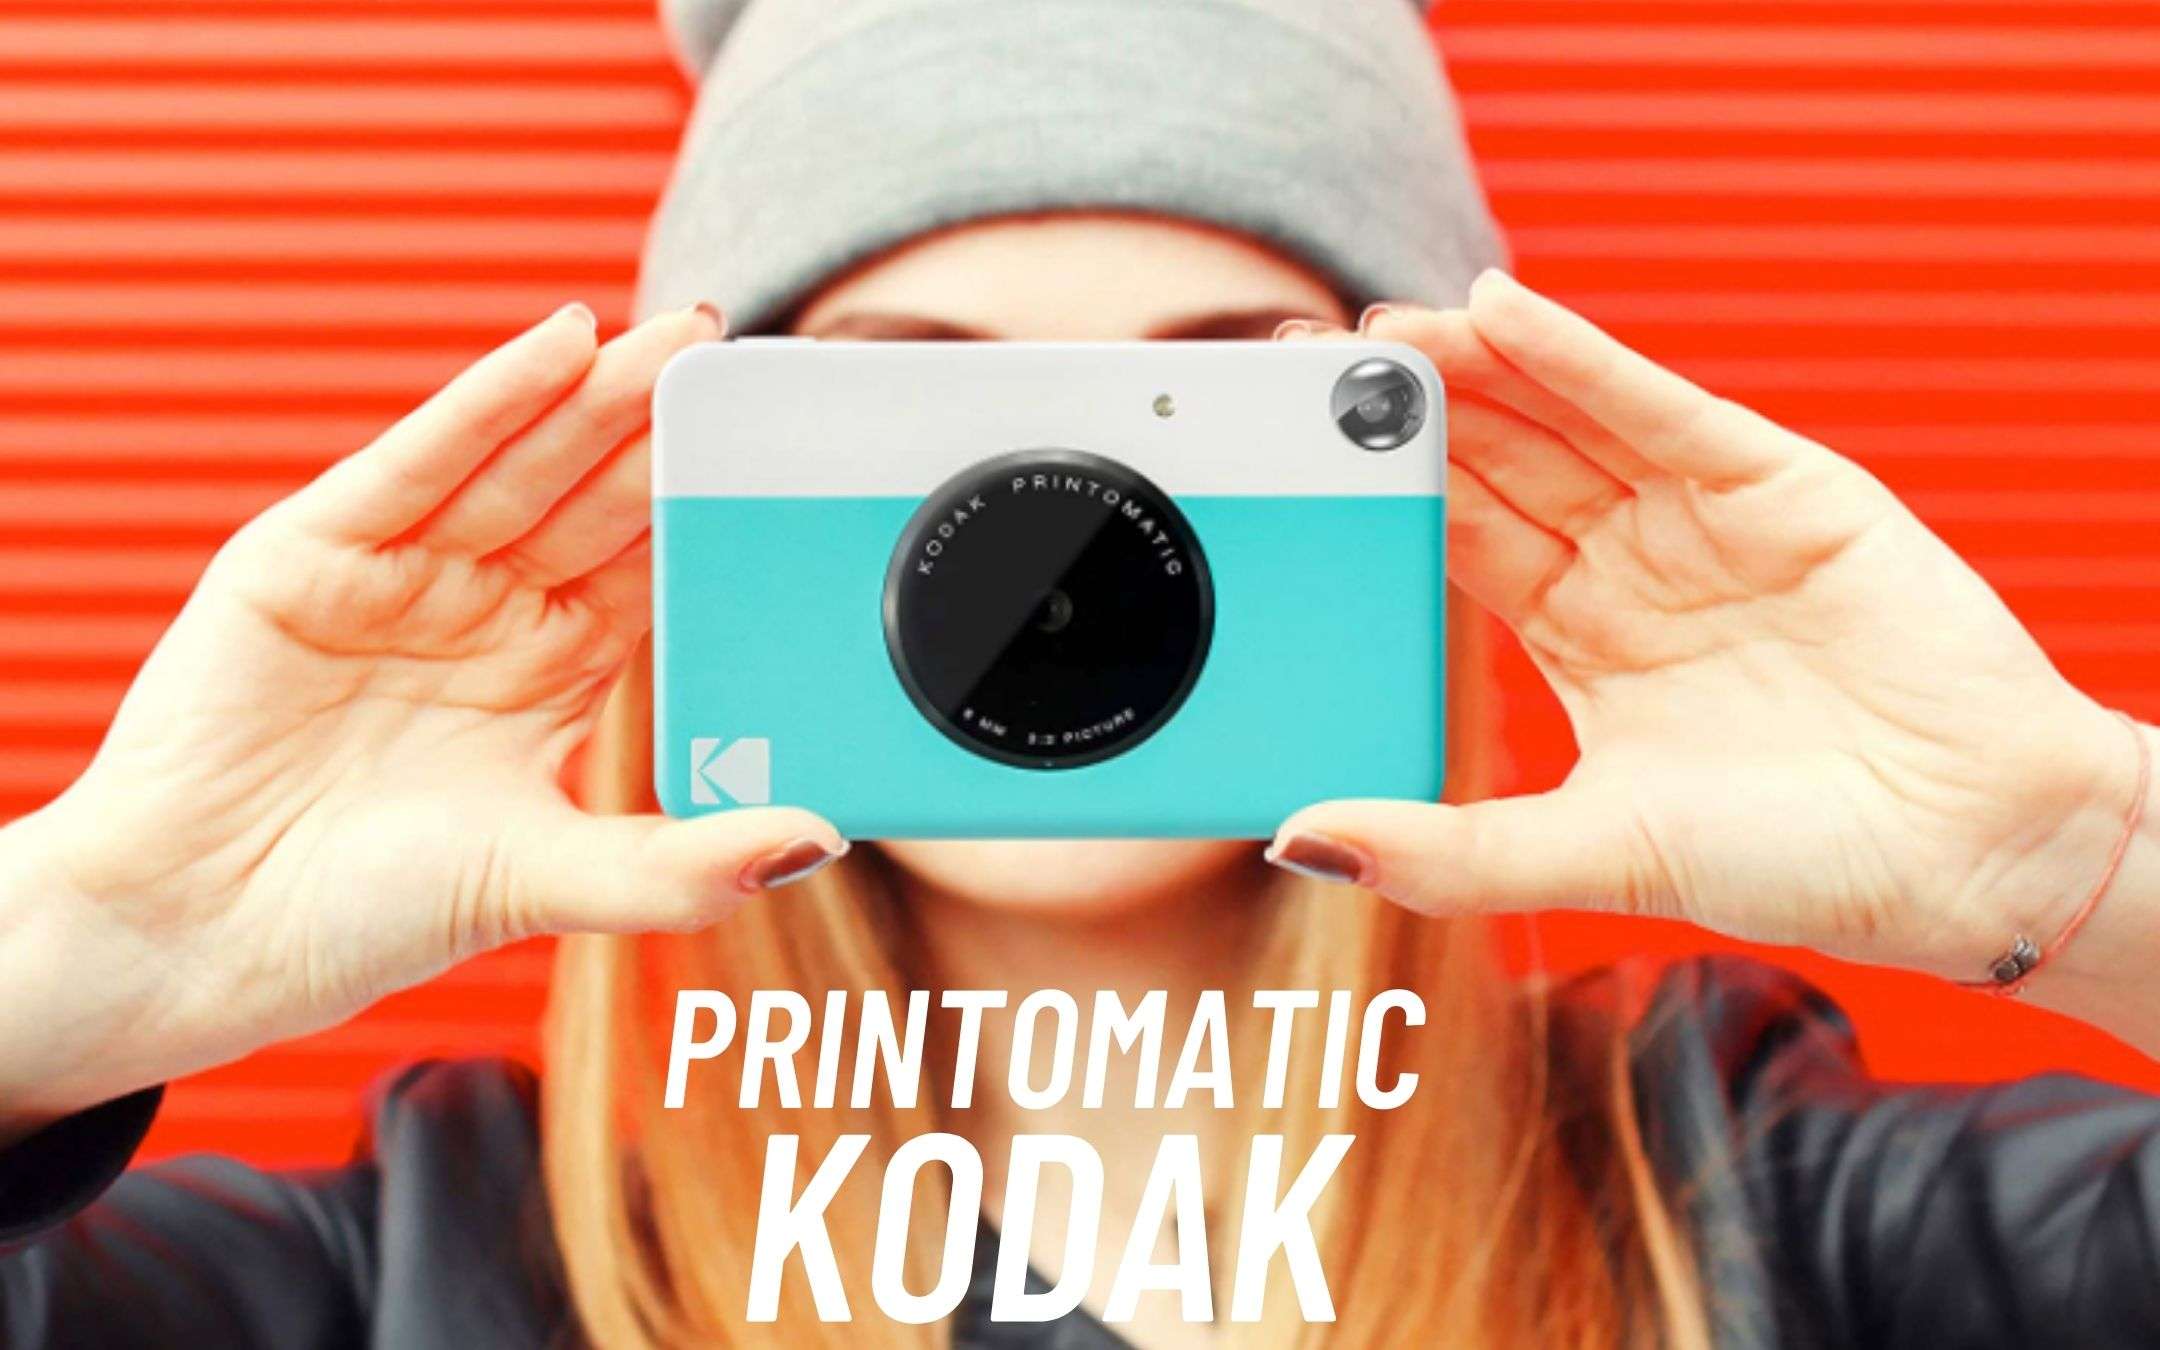 KODAK Printomatic: per tutti e costa poco (50€)